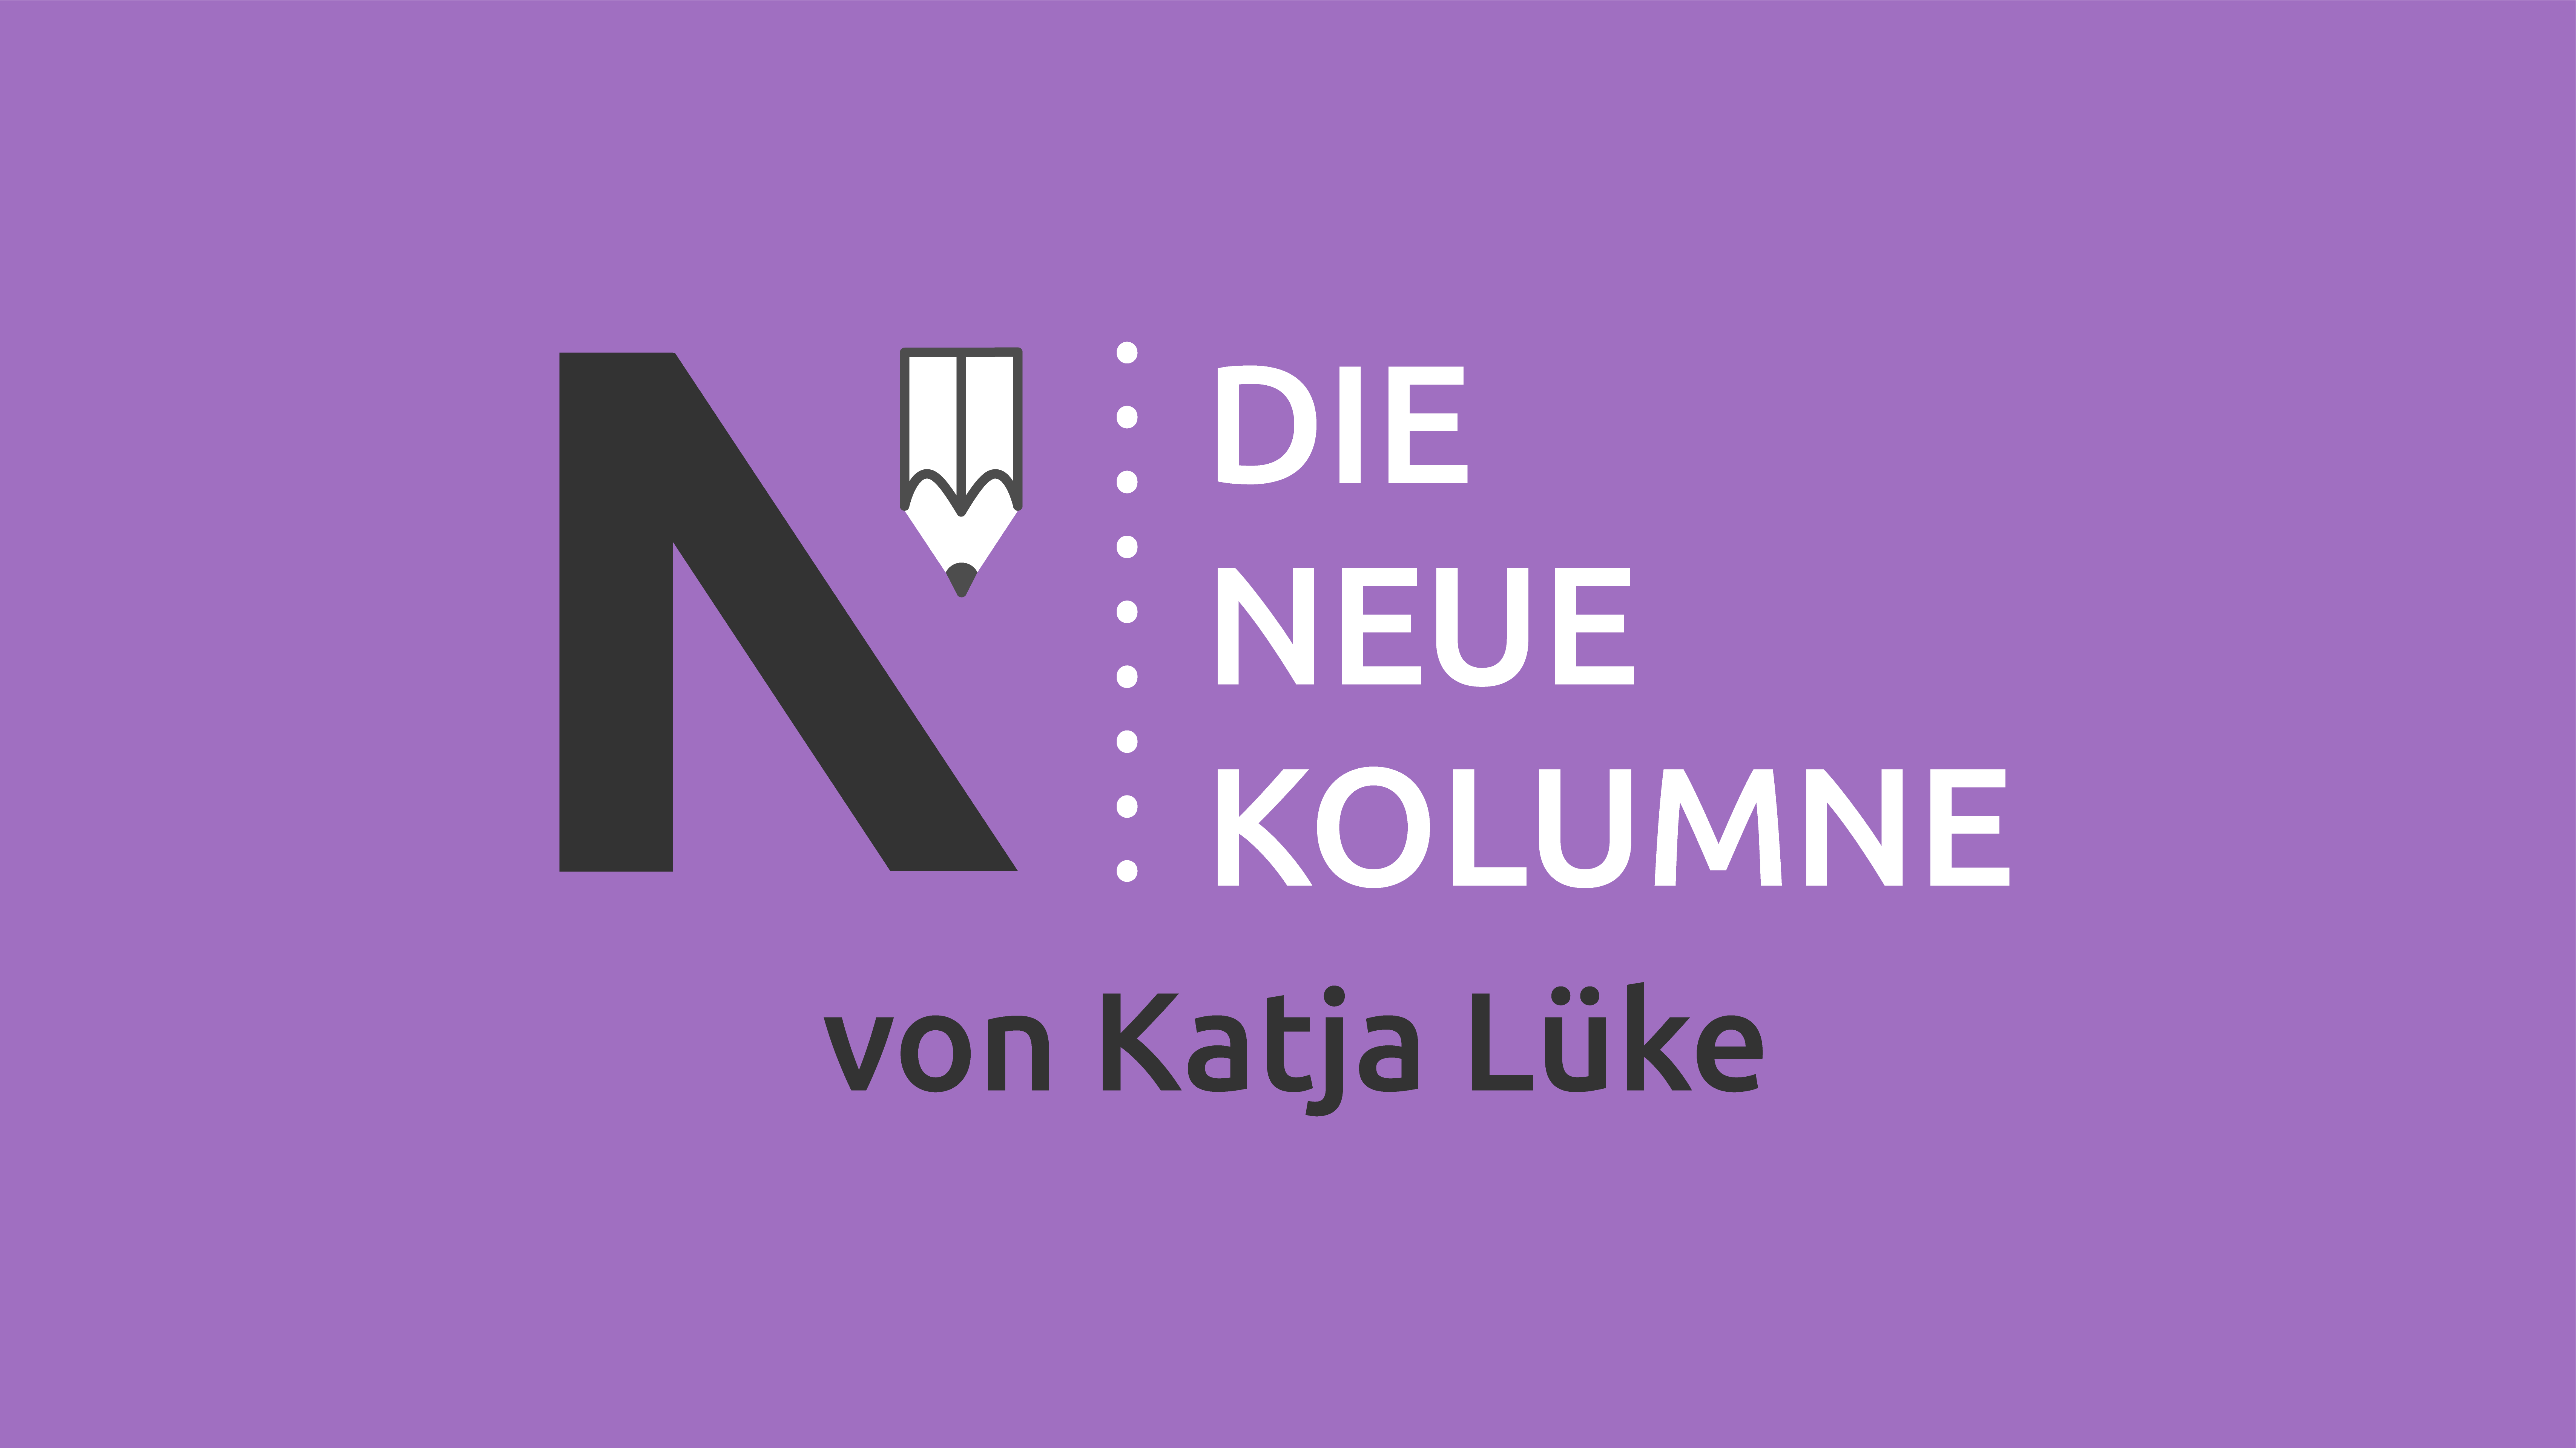 Das Logo von Die Neue Norm auf lilafarbenen Grund. Rechts steht: Die Neue Kolumne. Unten steht: von Katja Lüke.